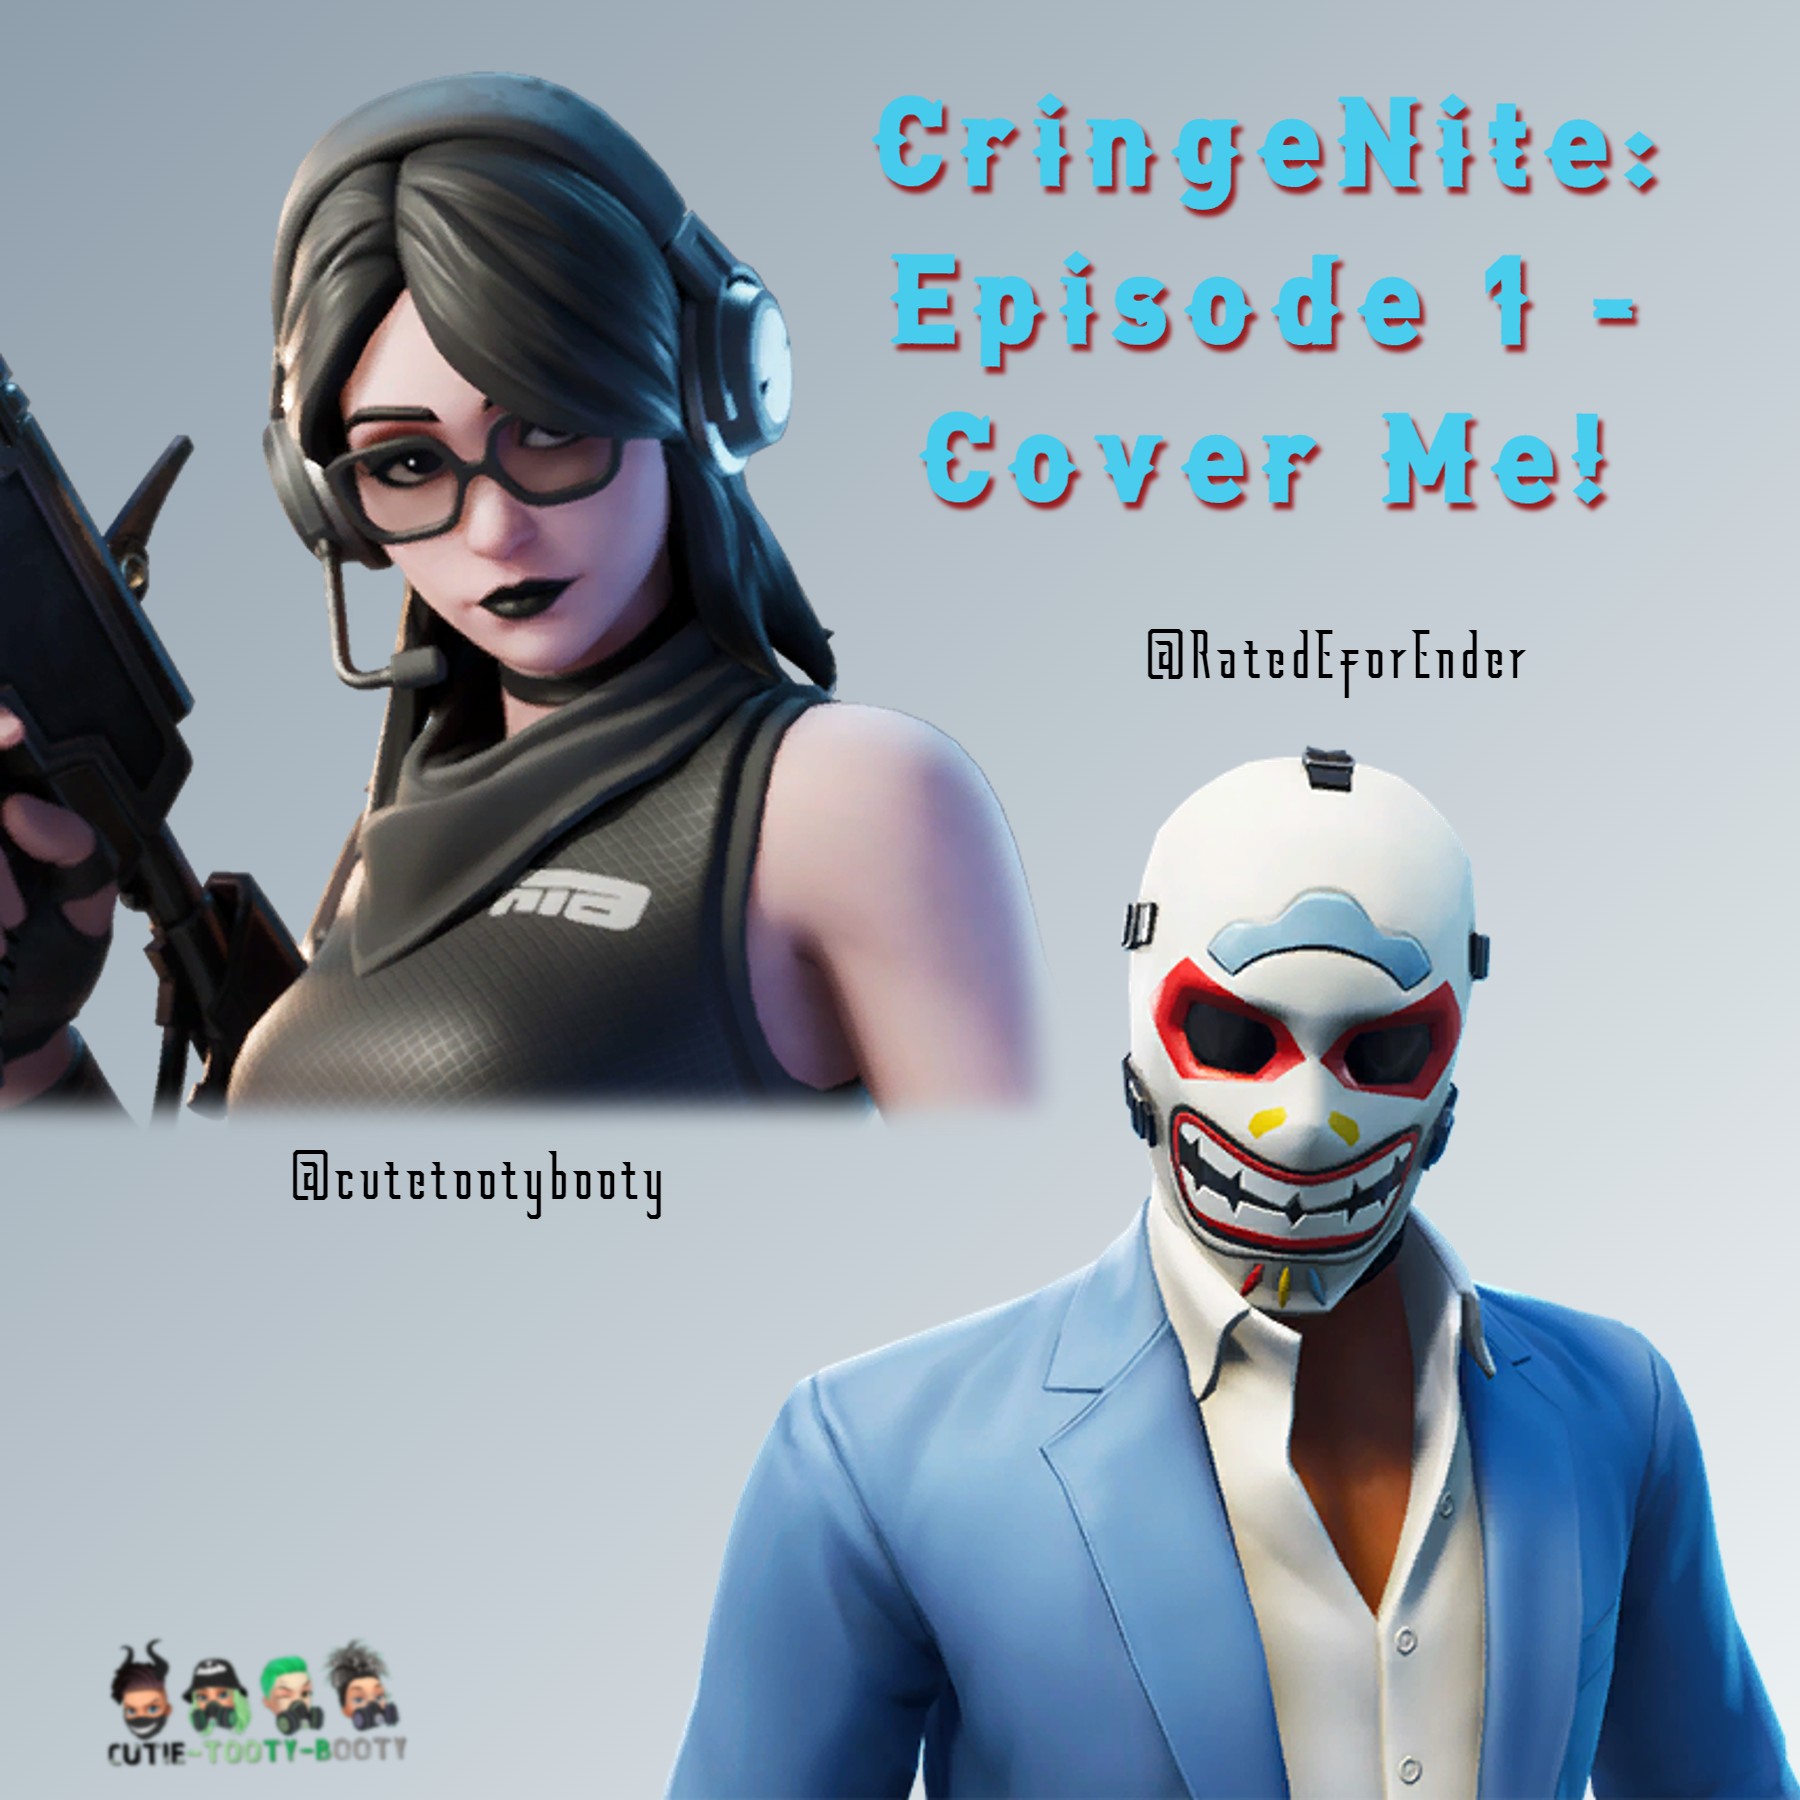 CringeNite: Episode 1 - Cover Me!